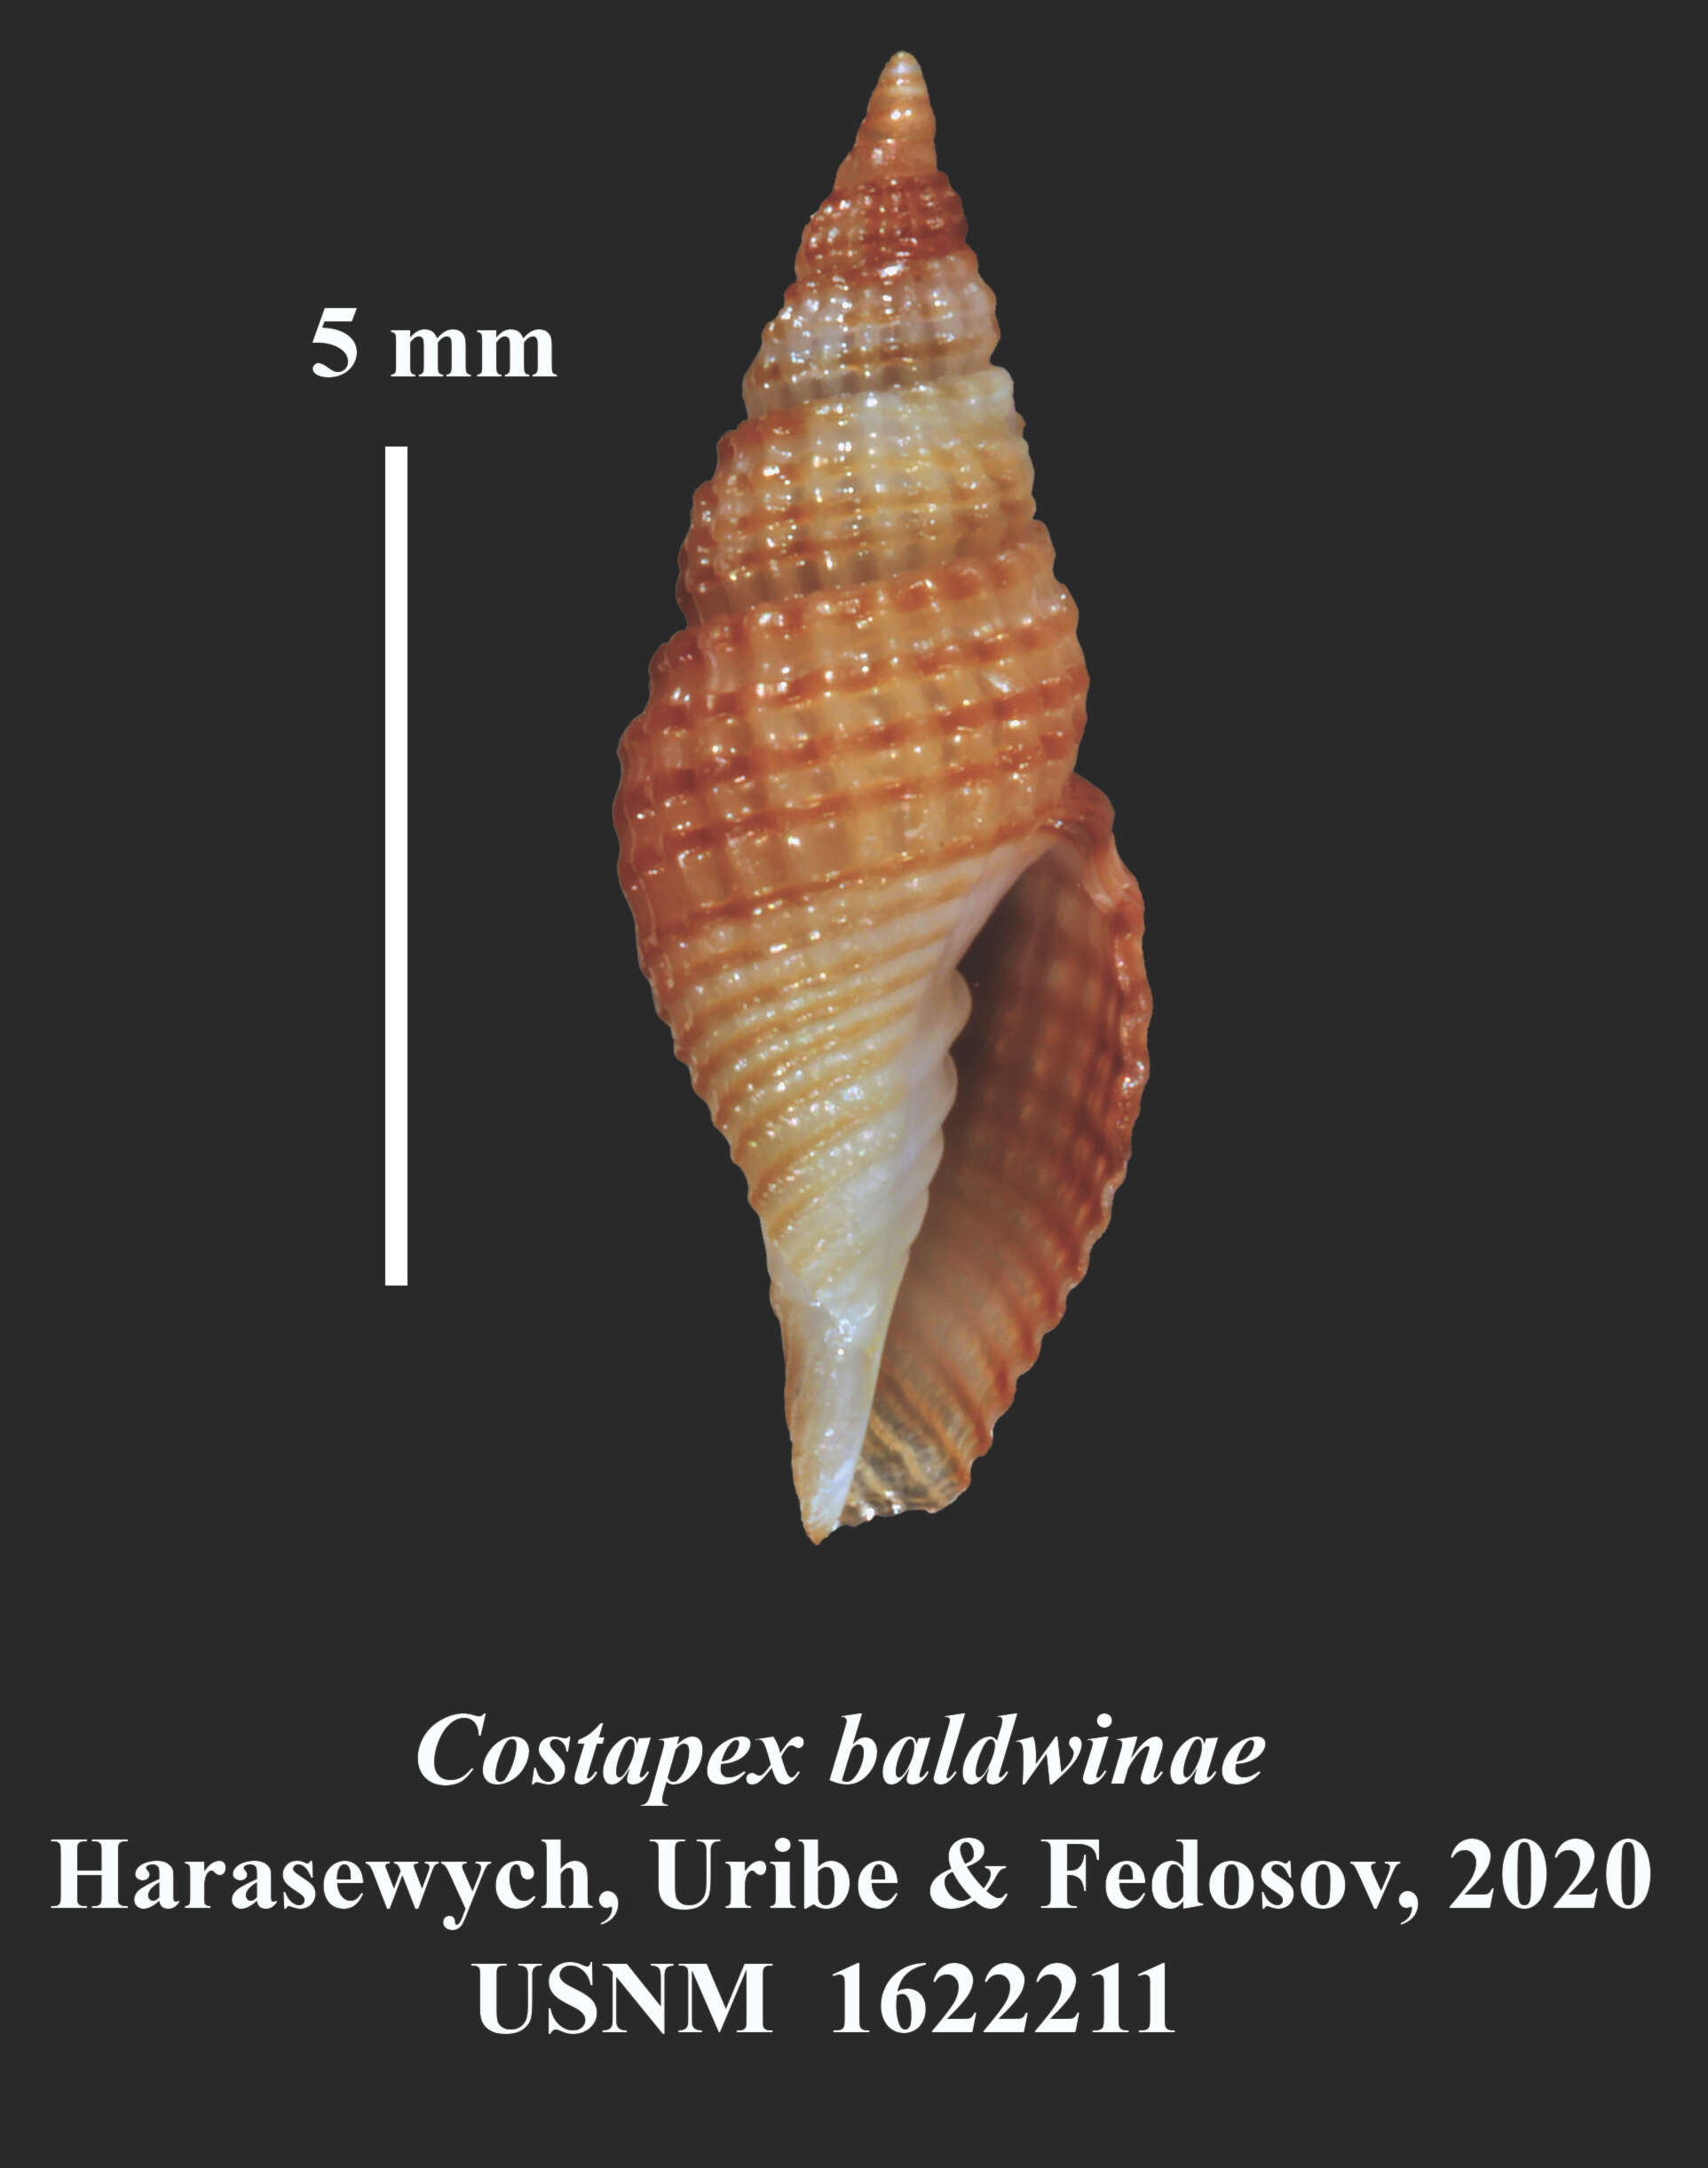 Image of Costapex baldwinae Harasewych, Uribe & Fedosov 2020